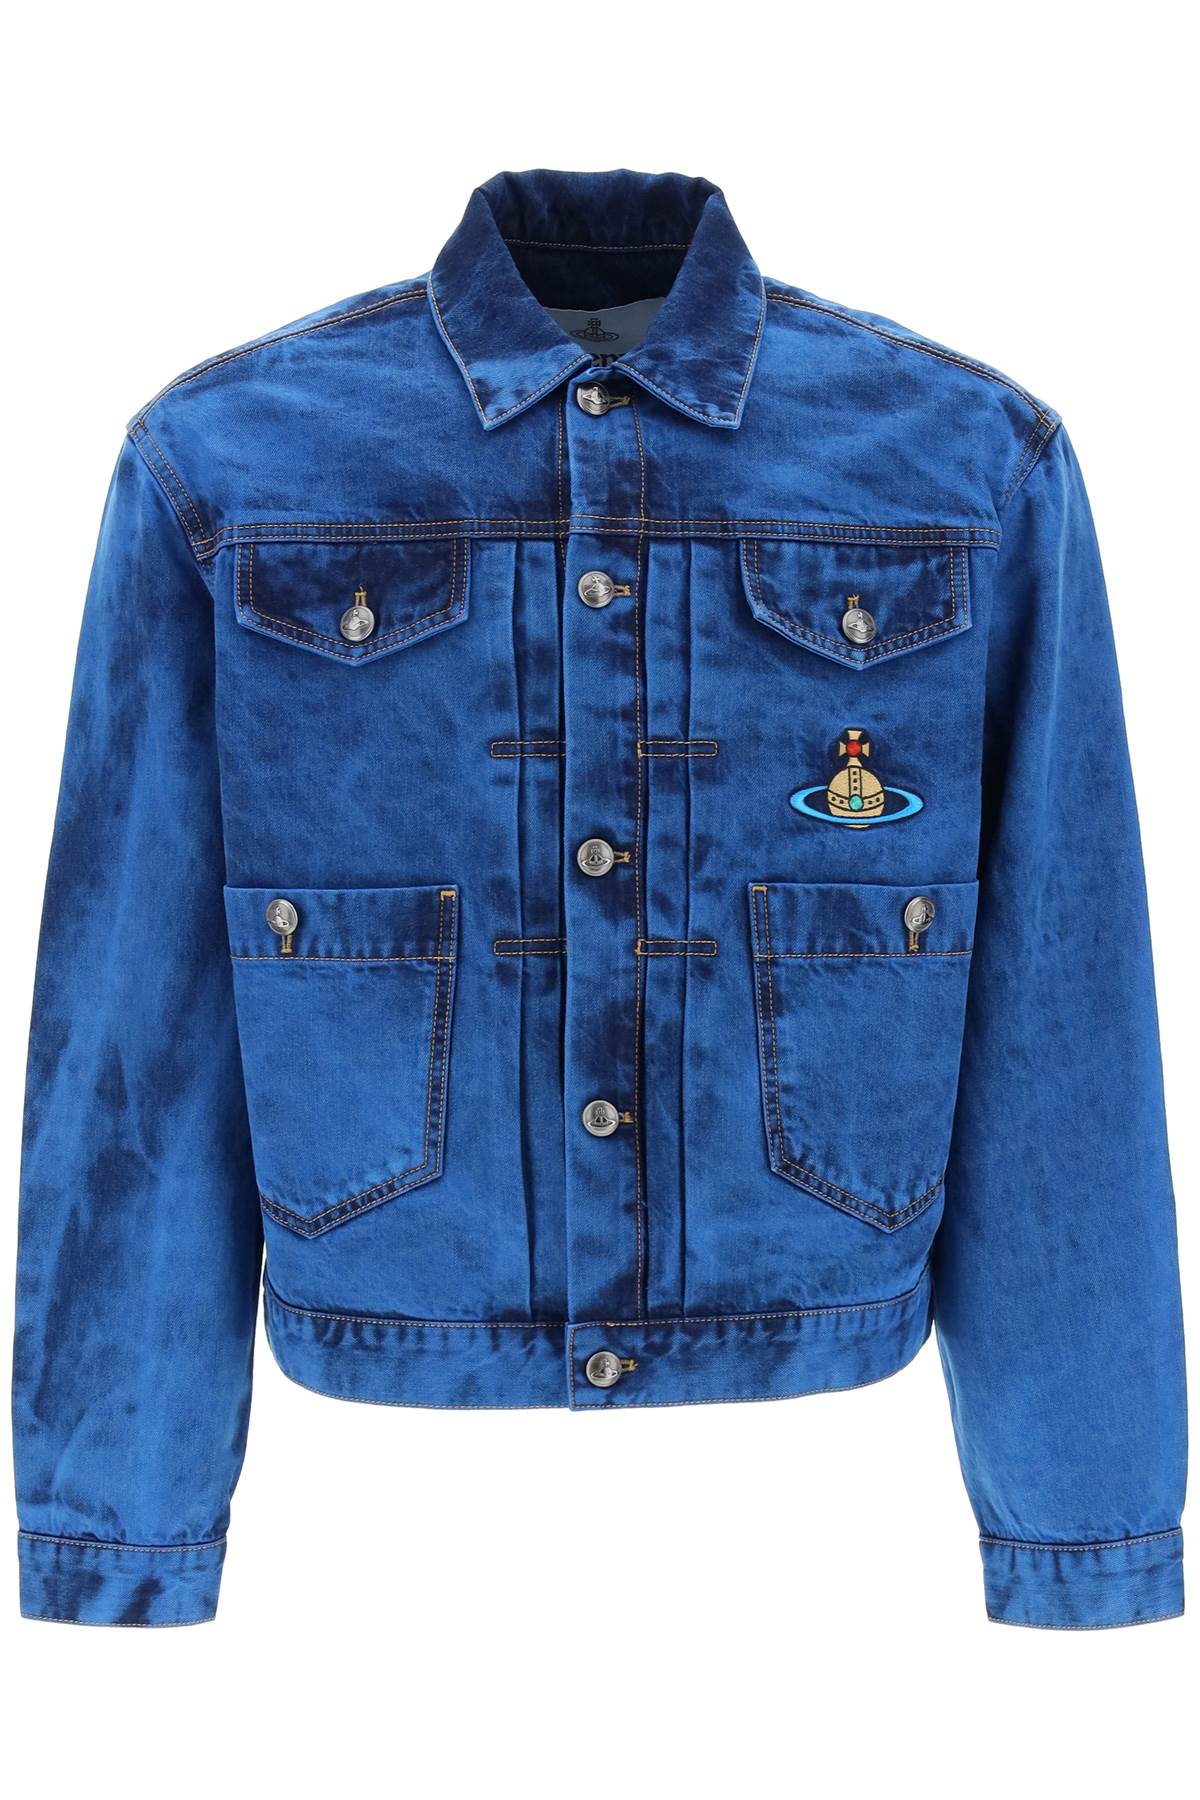 VIVIENNE WESTWOOD Navy Blue Denim Jacket for Men - SS24 Collection